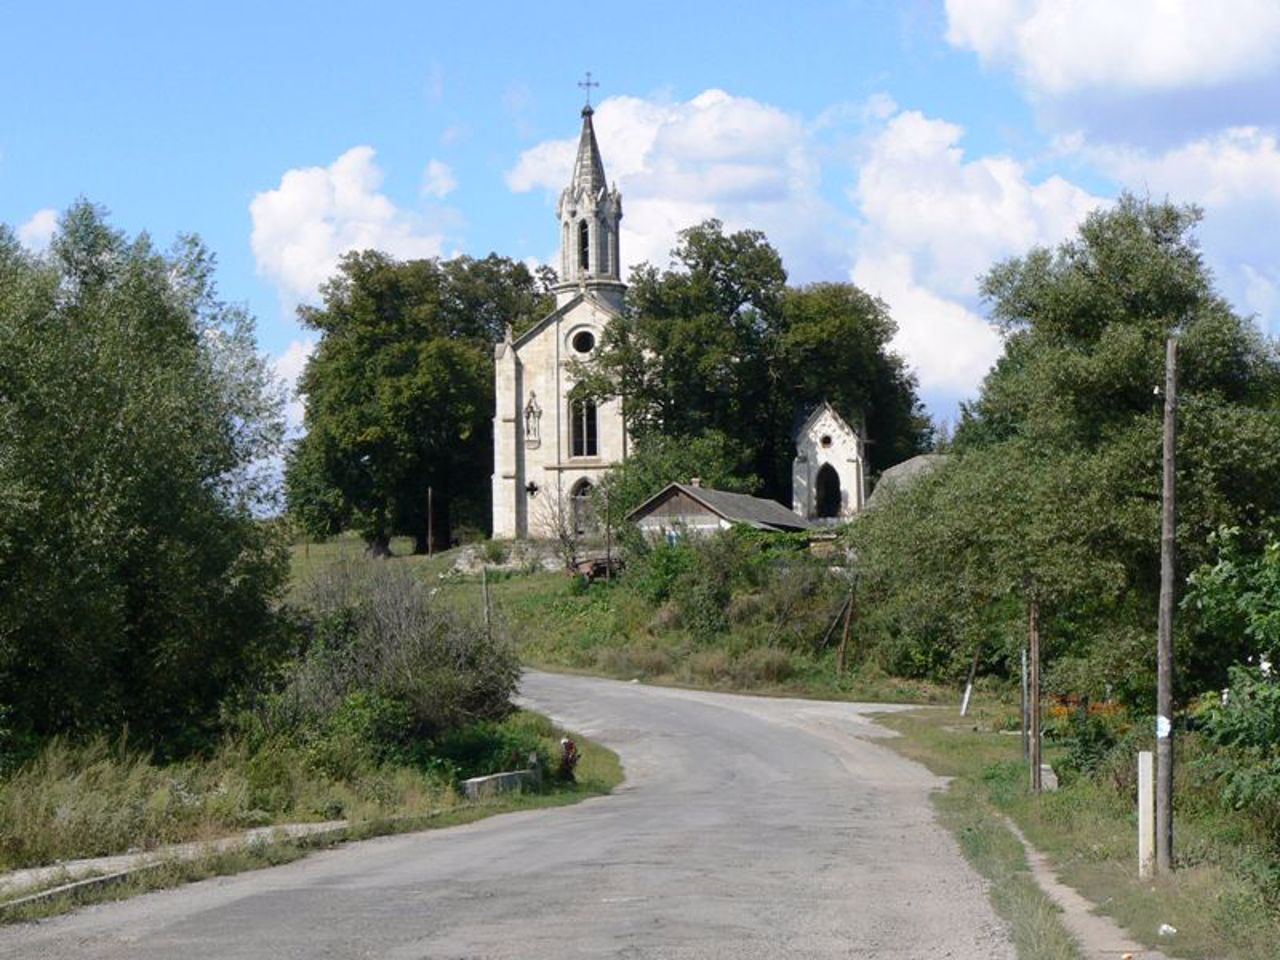 St. Jan Nepomuk Church, Turylche